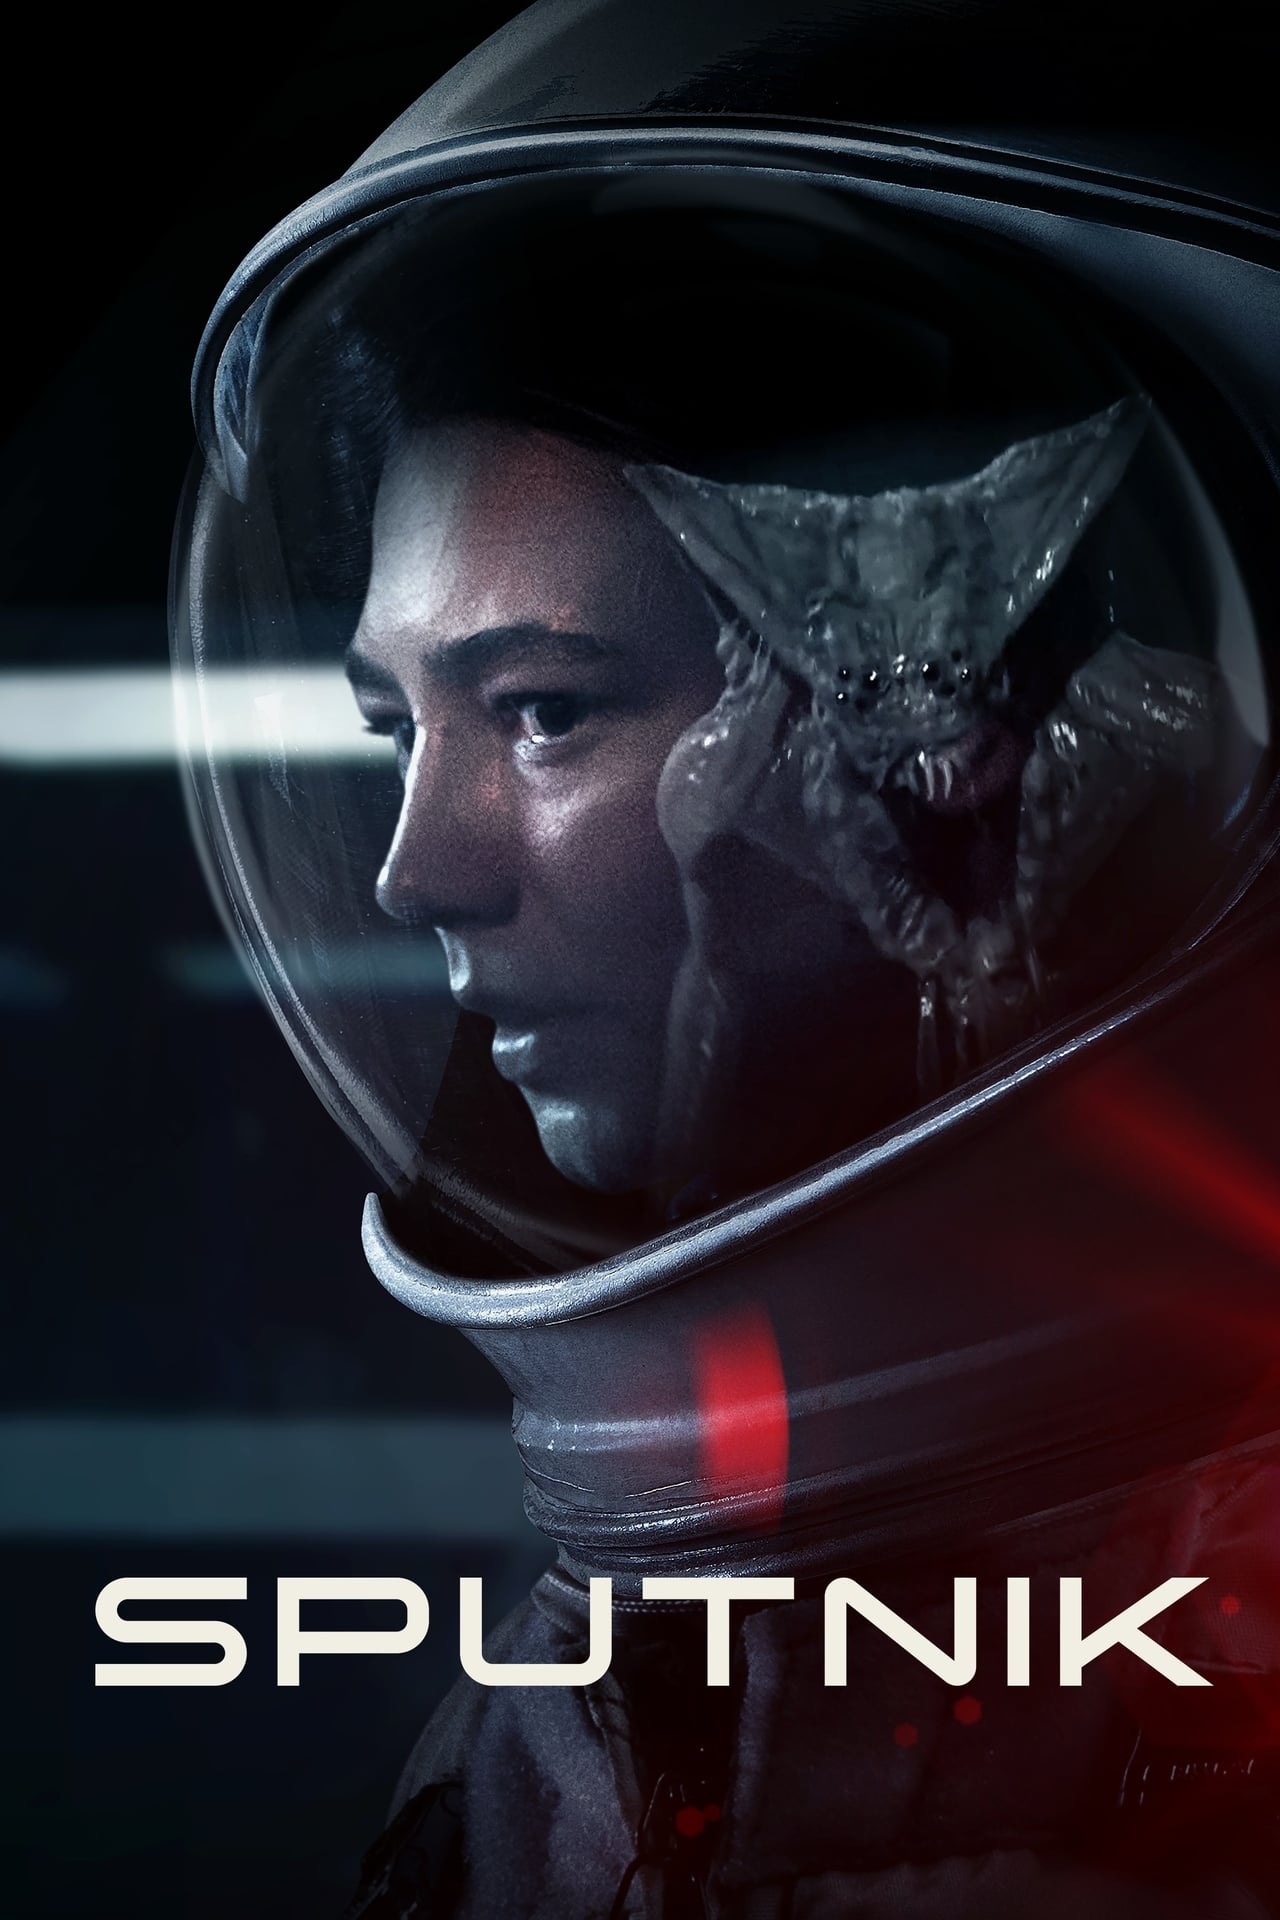 Plakát pro film “Sputnik”